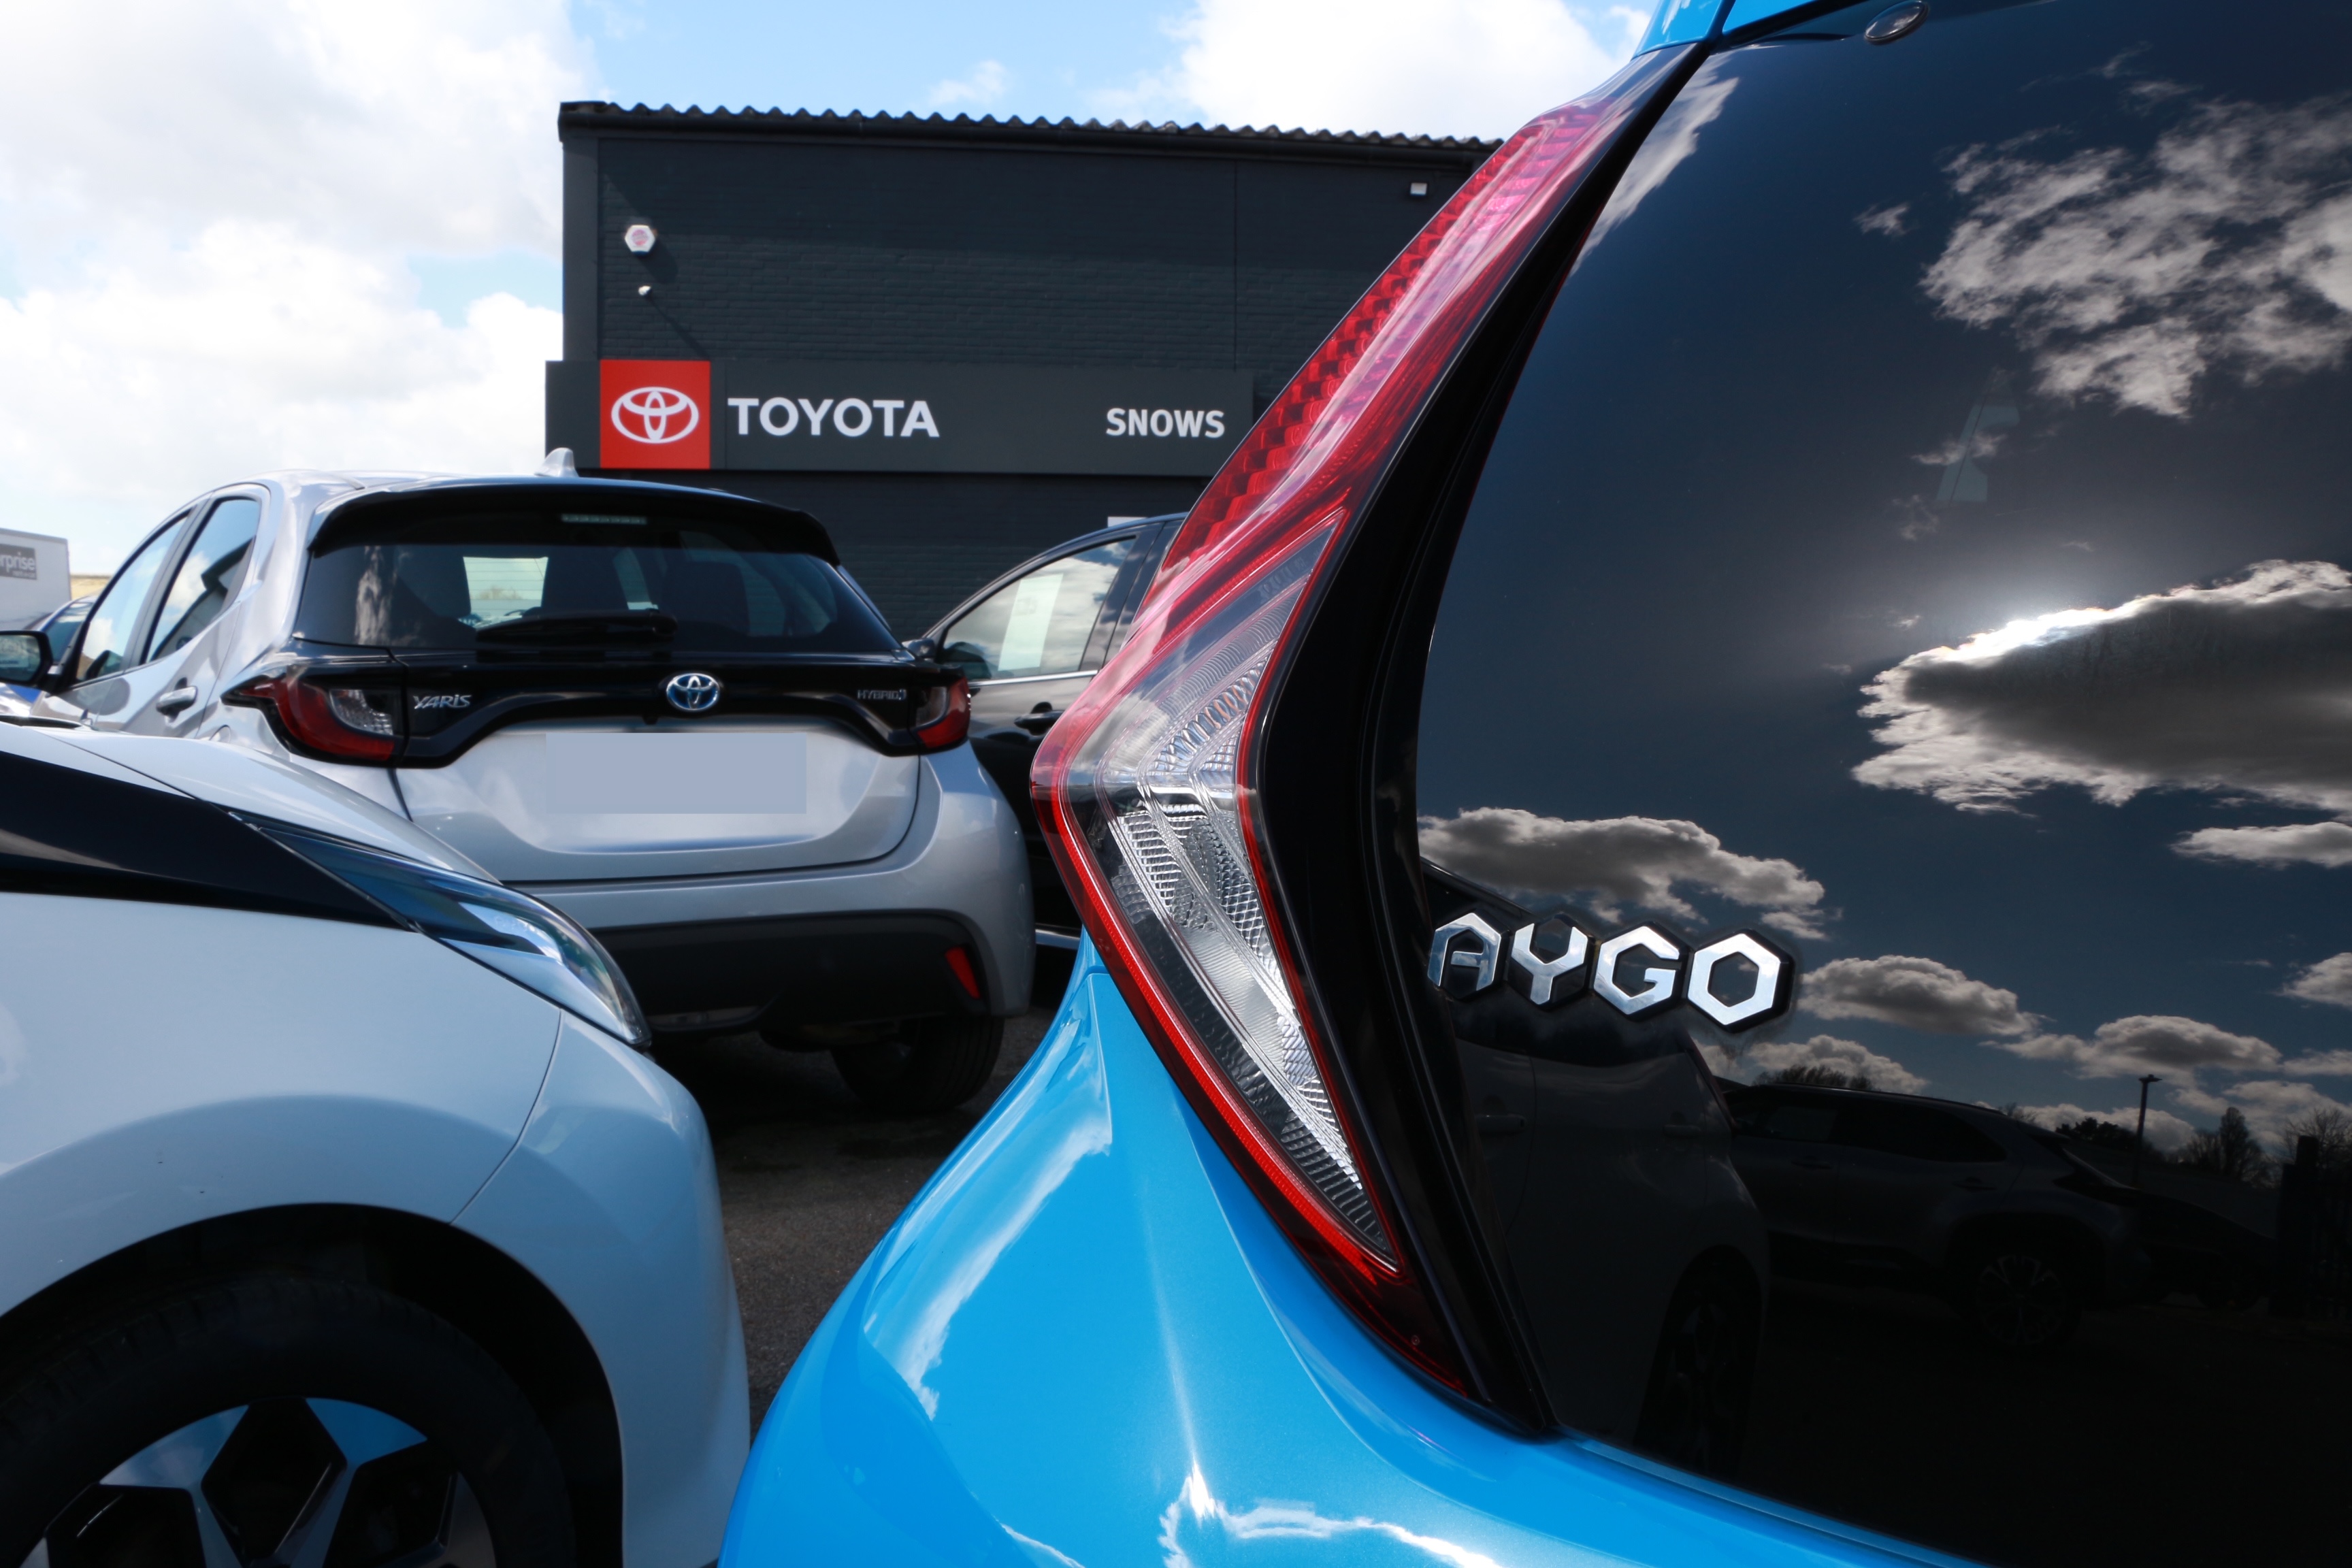 Toyota Aygo at dealership badge